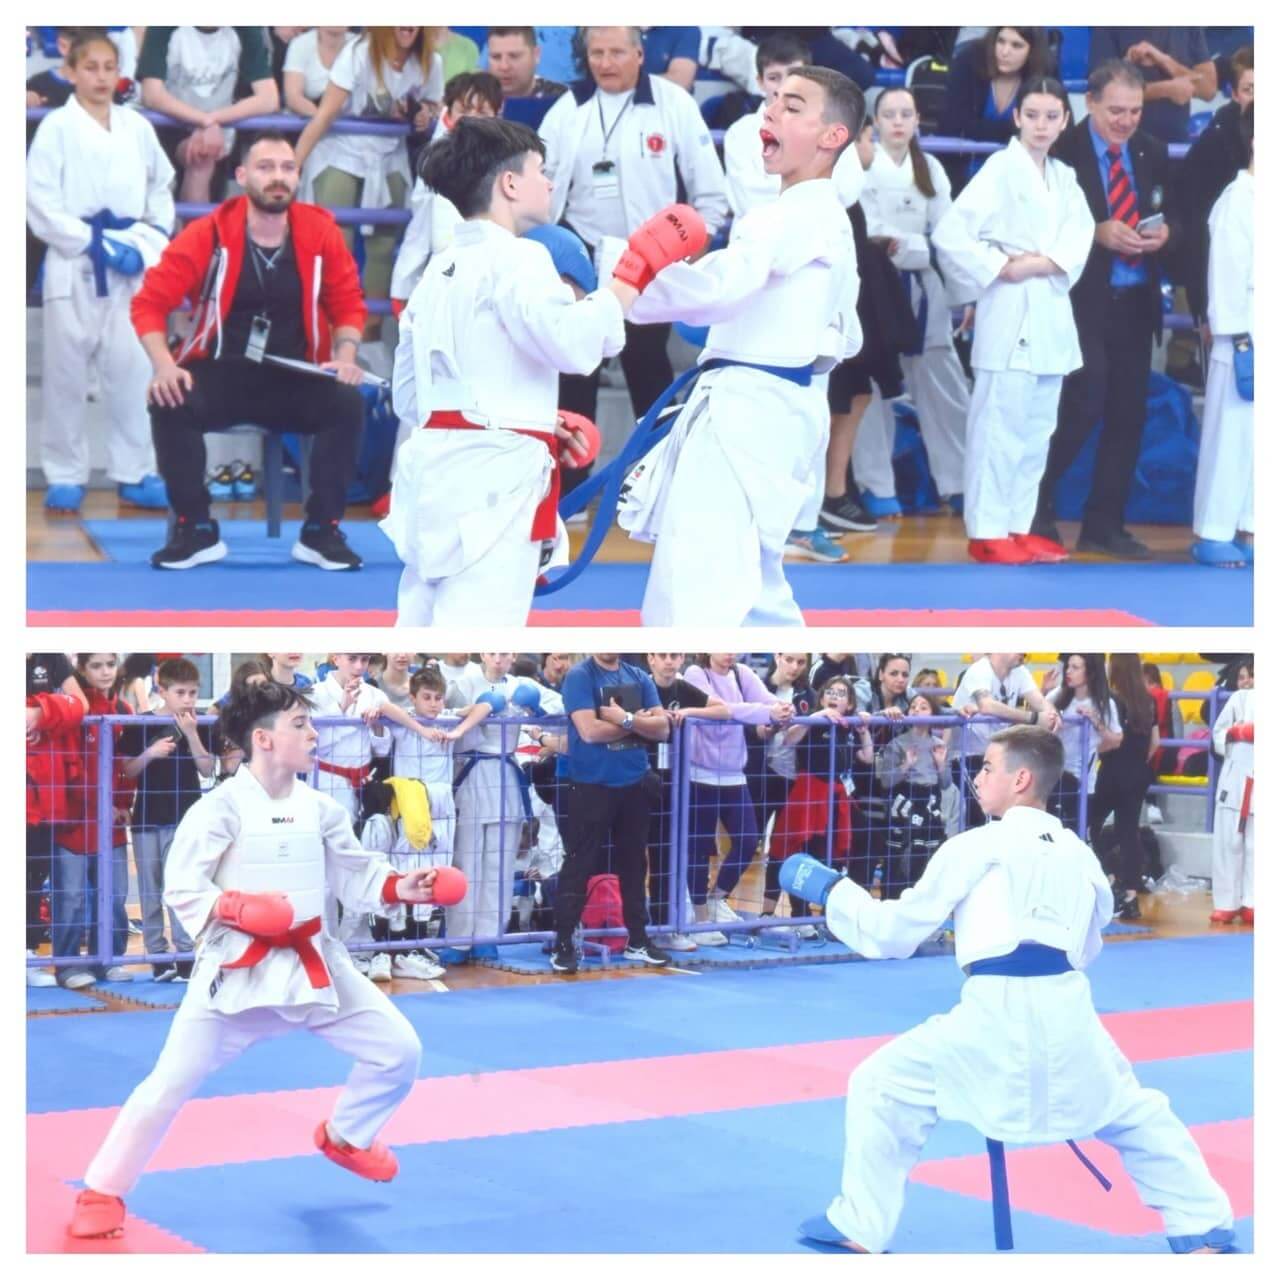 victorious-karate-psachna-panellinio-protathlima-paidon-korasidon-2024-6